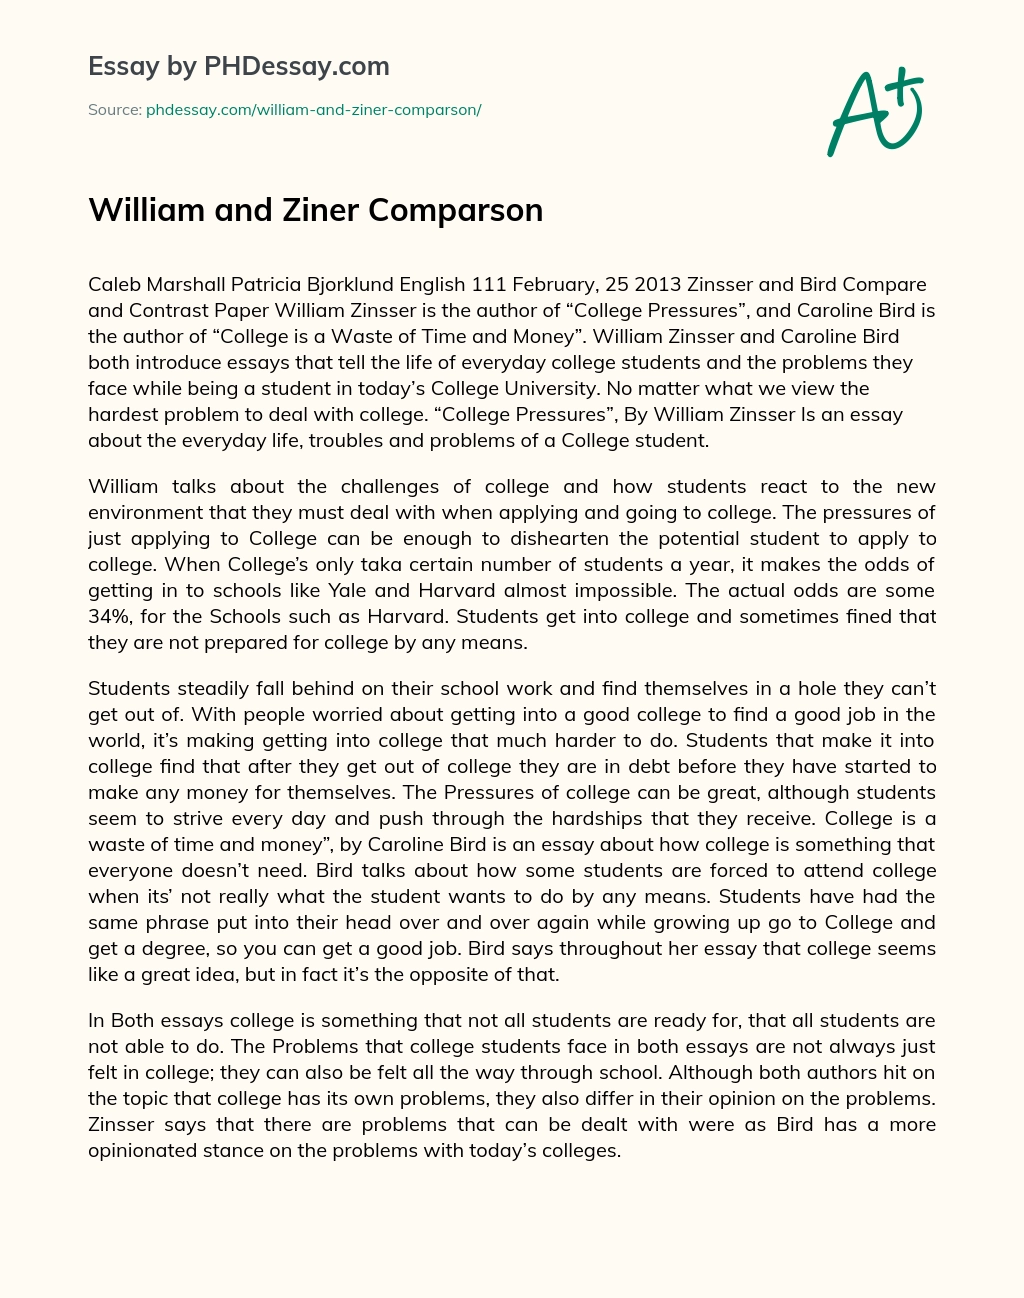 William and Ziner Comparson essay